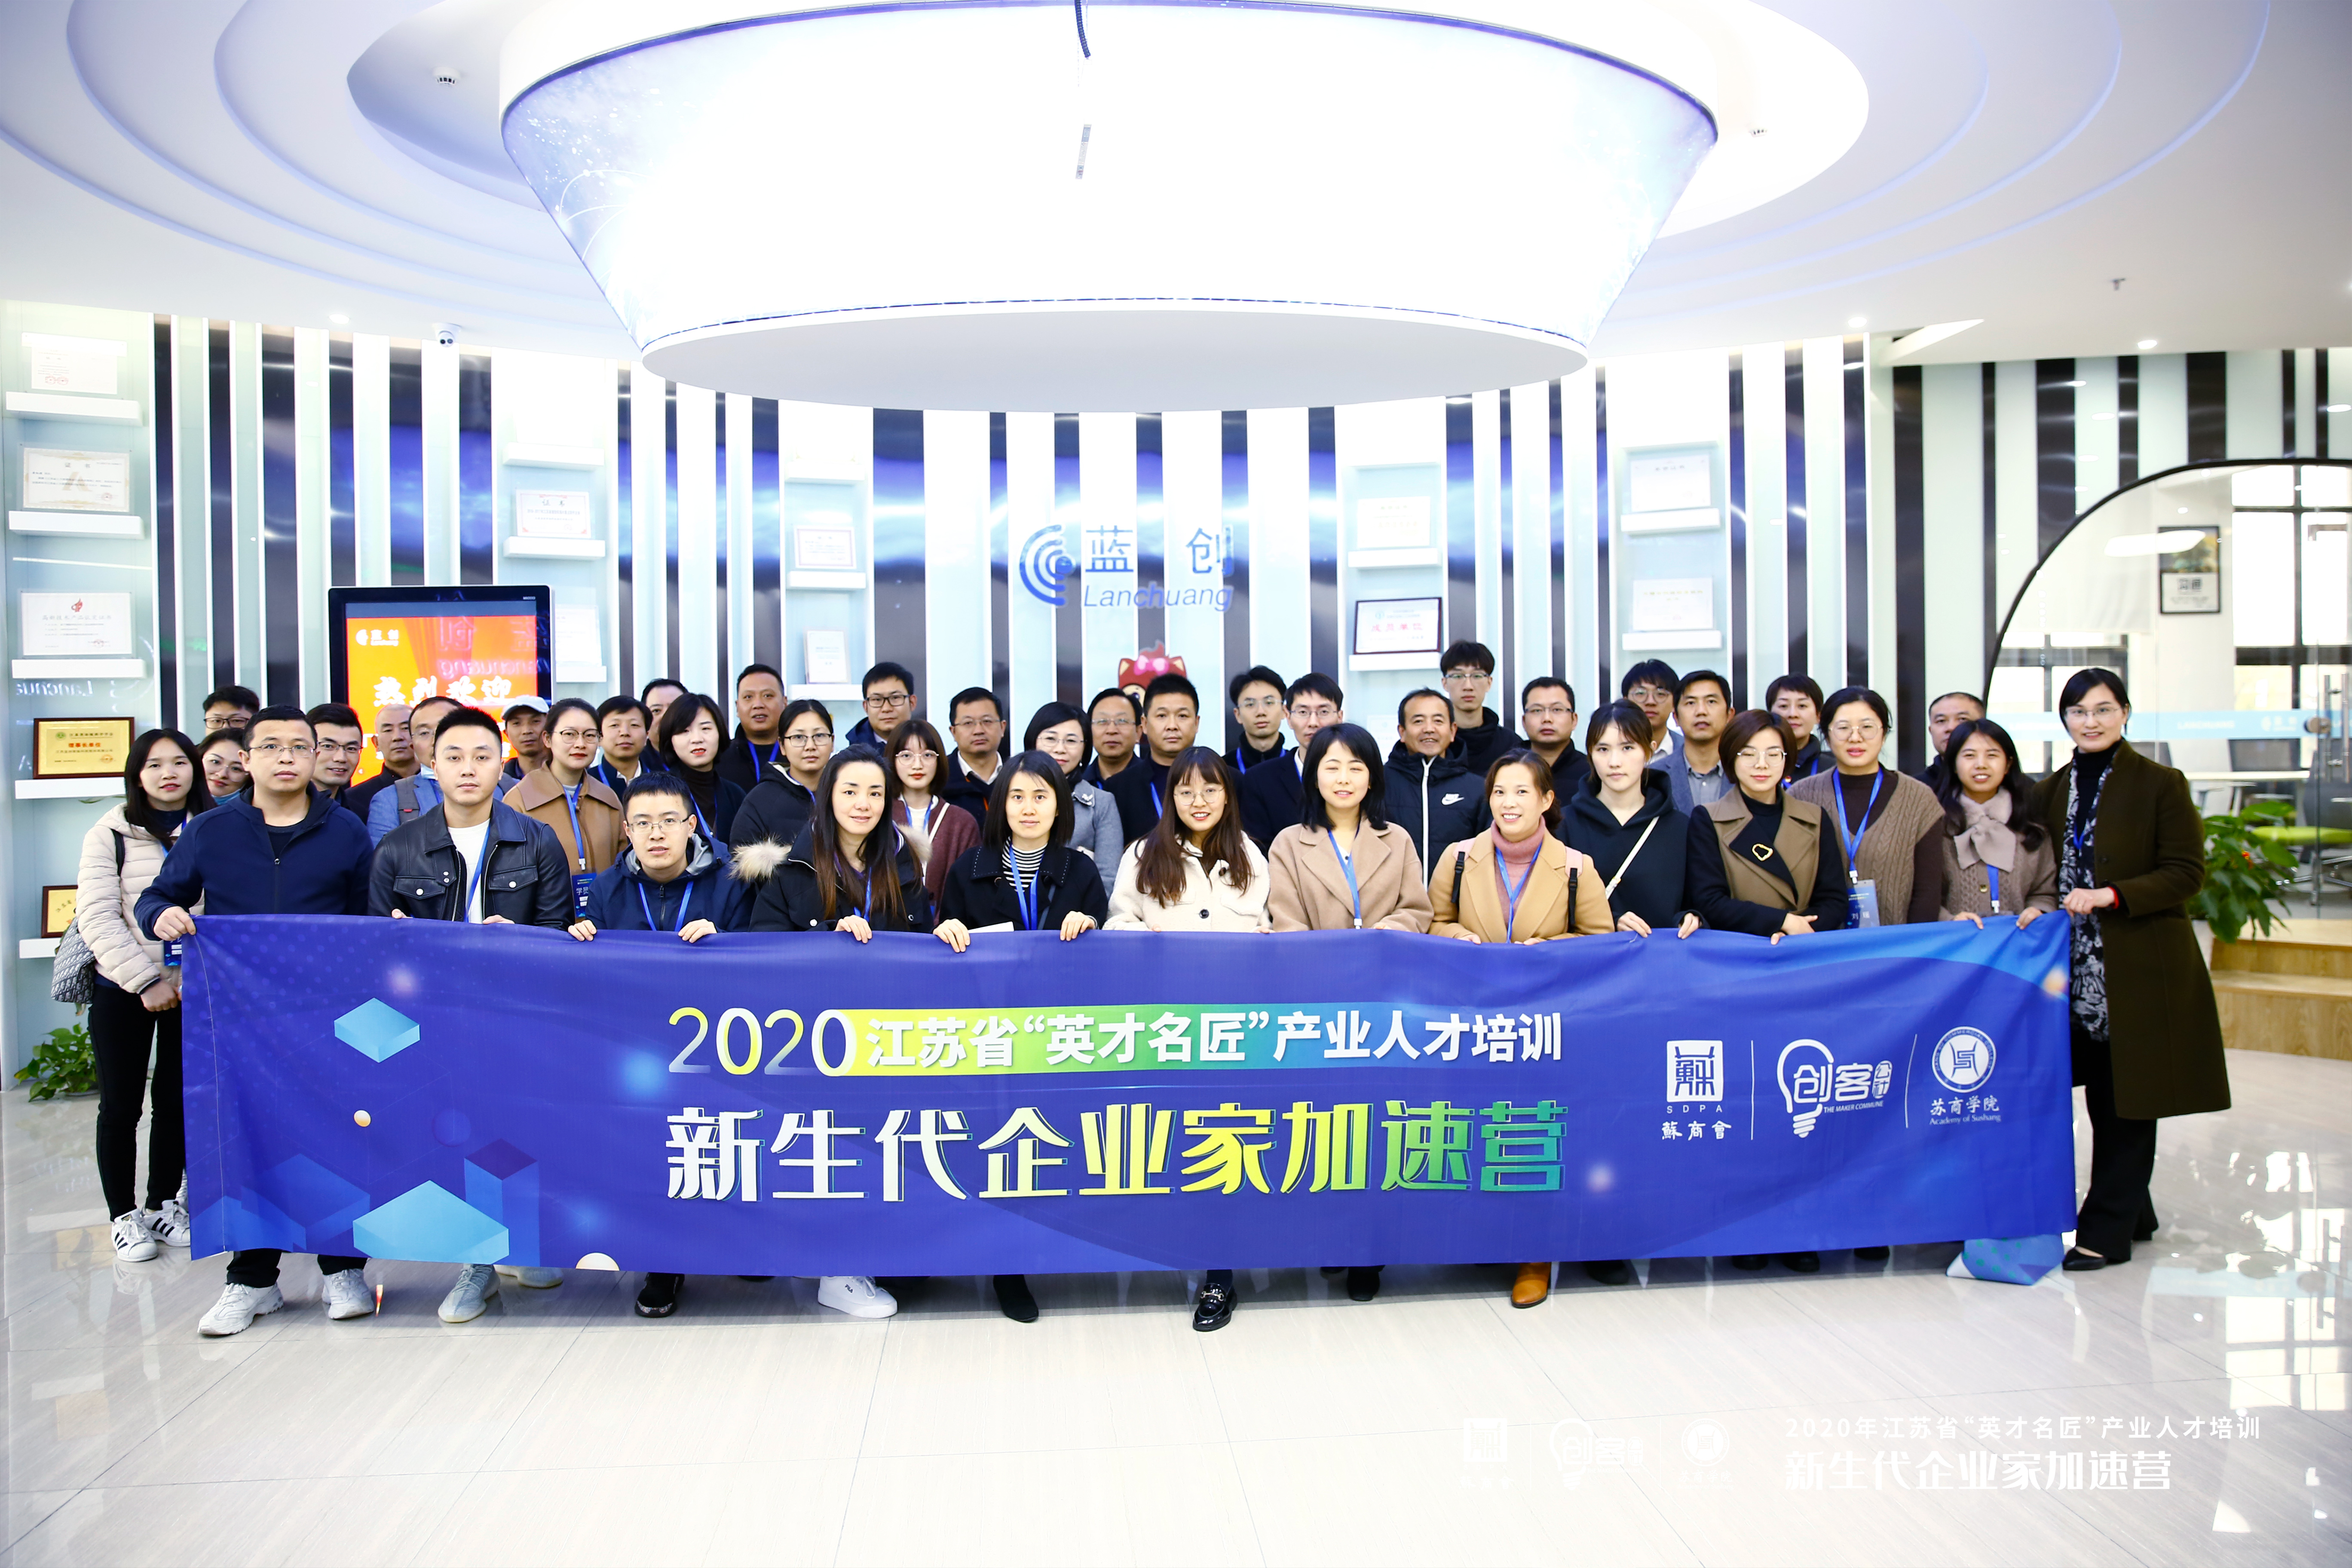 Opleidingskursus versnelkamp vir nuwe generasie entrepreneurs van suidelike Jiangsu